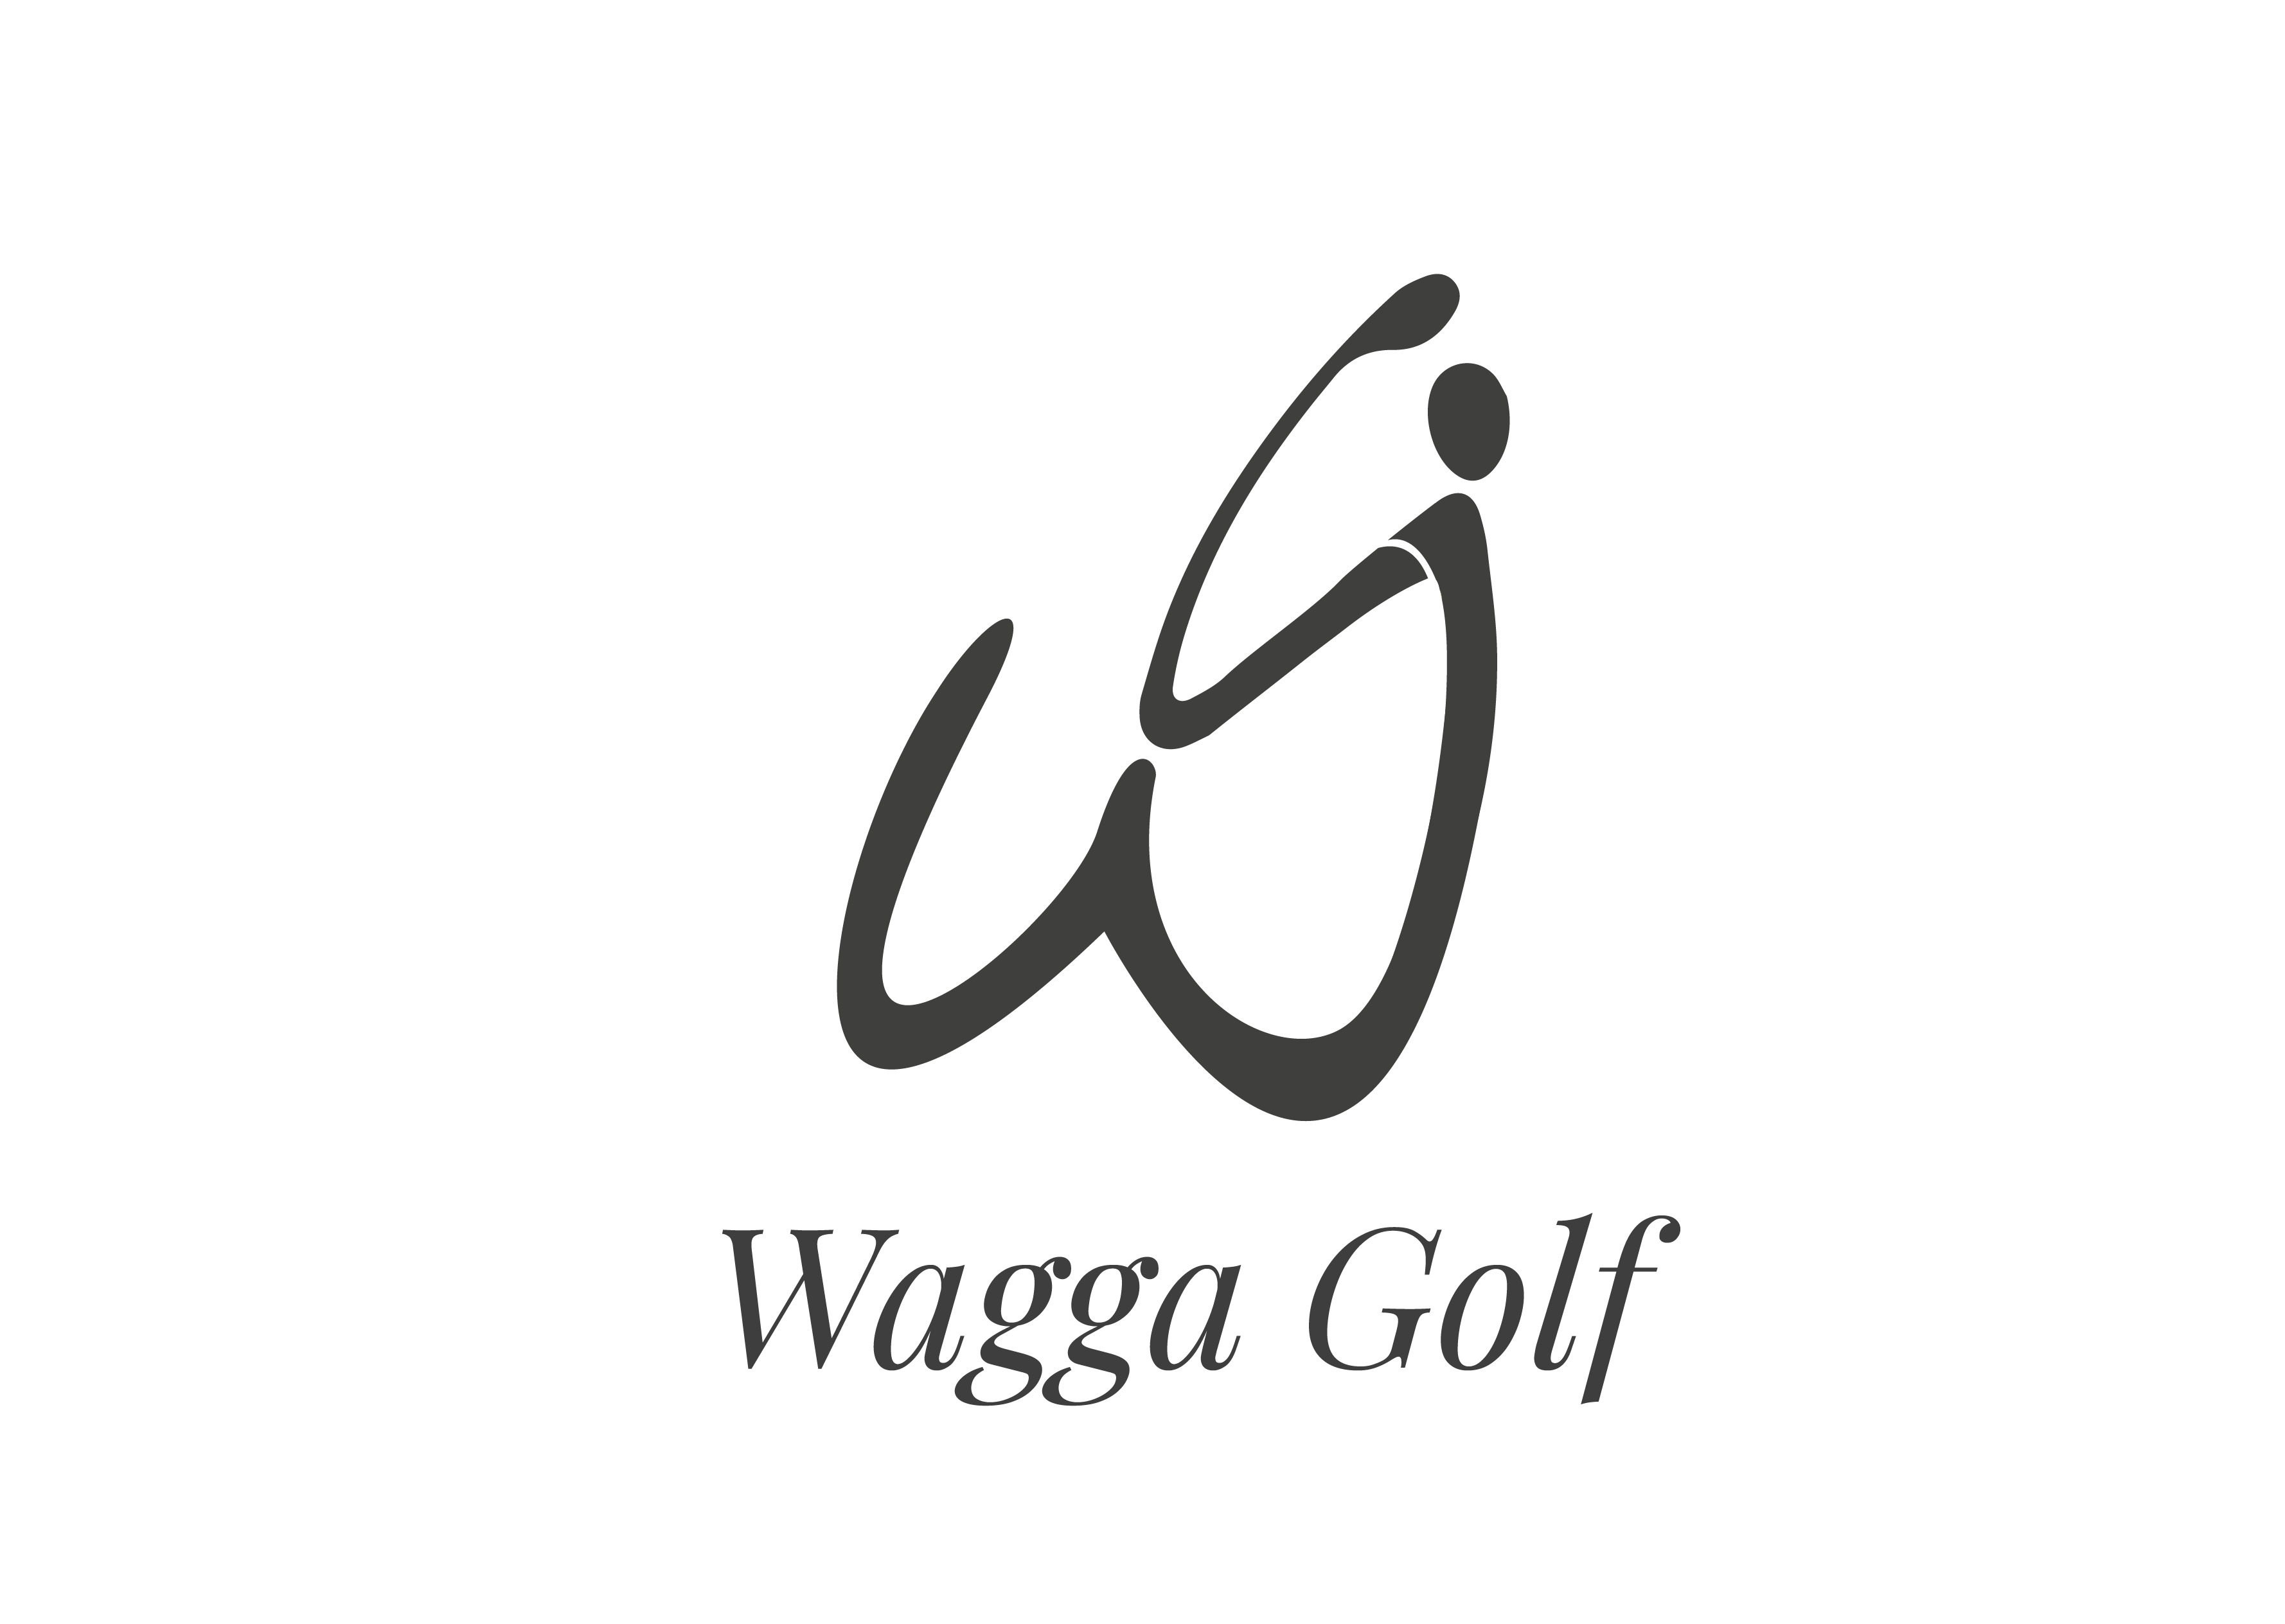 wagga city golf club logo